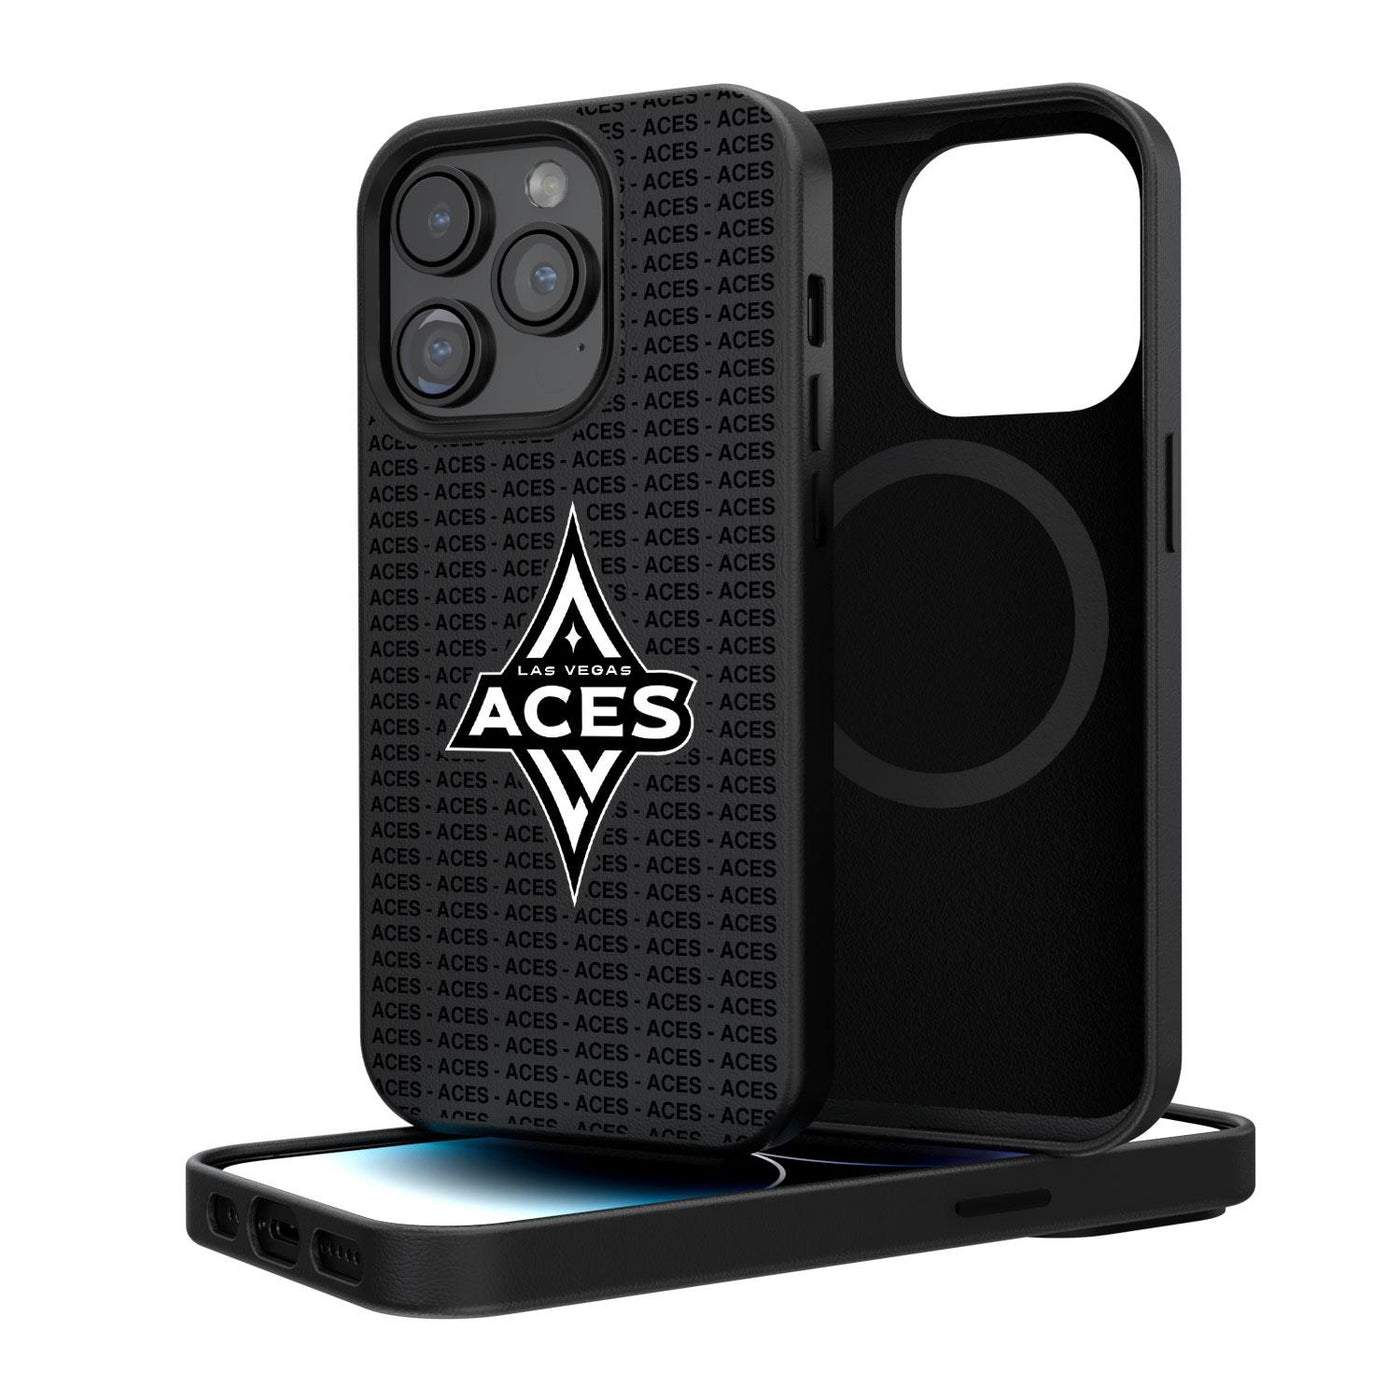 Las Vegas Aces iPhone Blackletter Magnetic Case